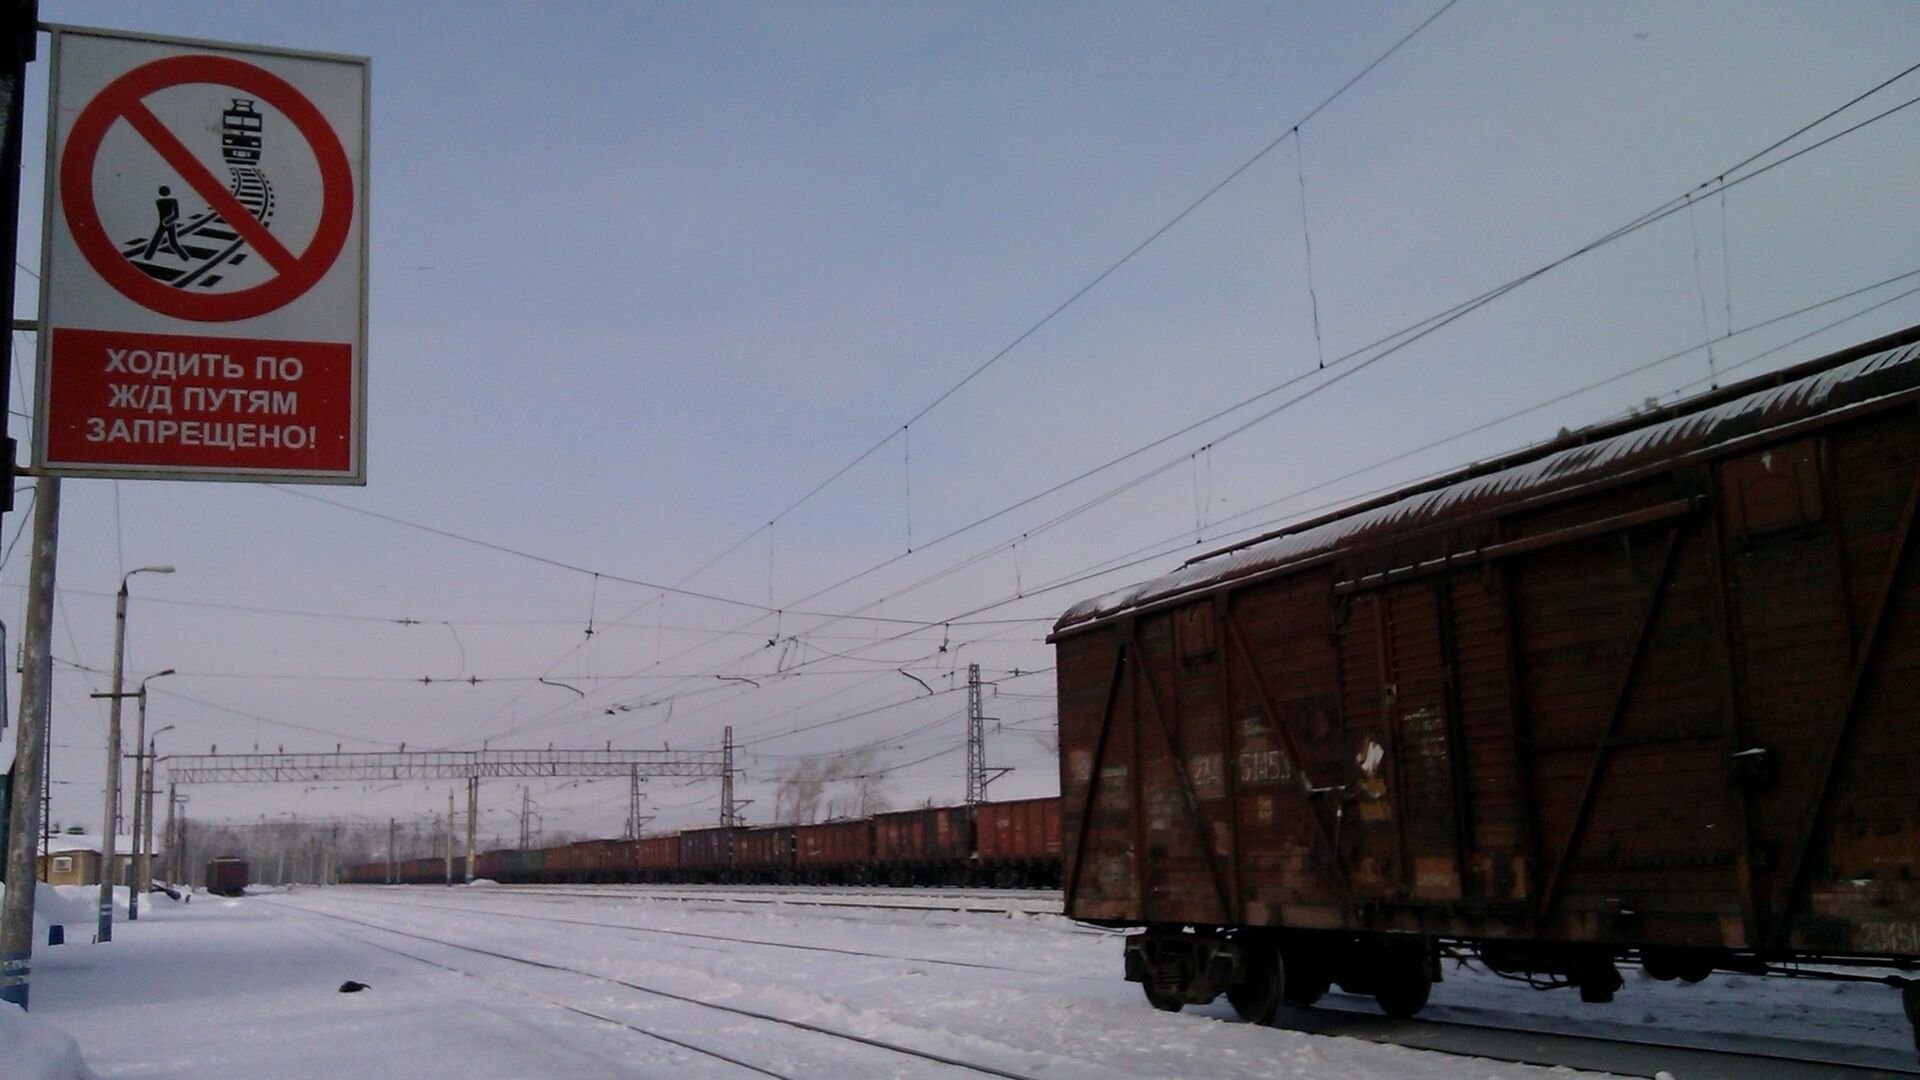 В Прикамье задержали похитителя деталей железнодорожных вагонов